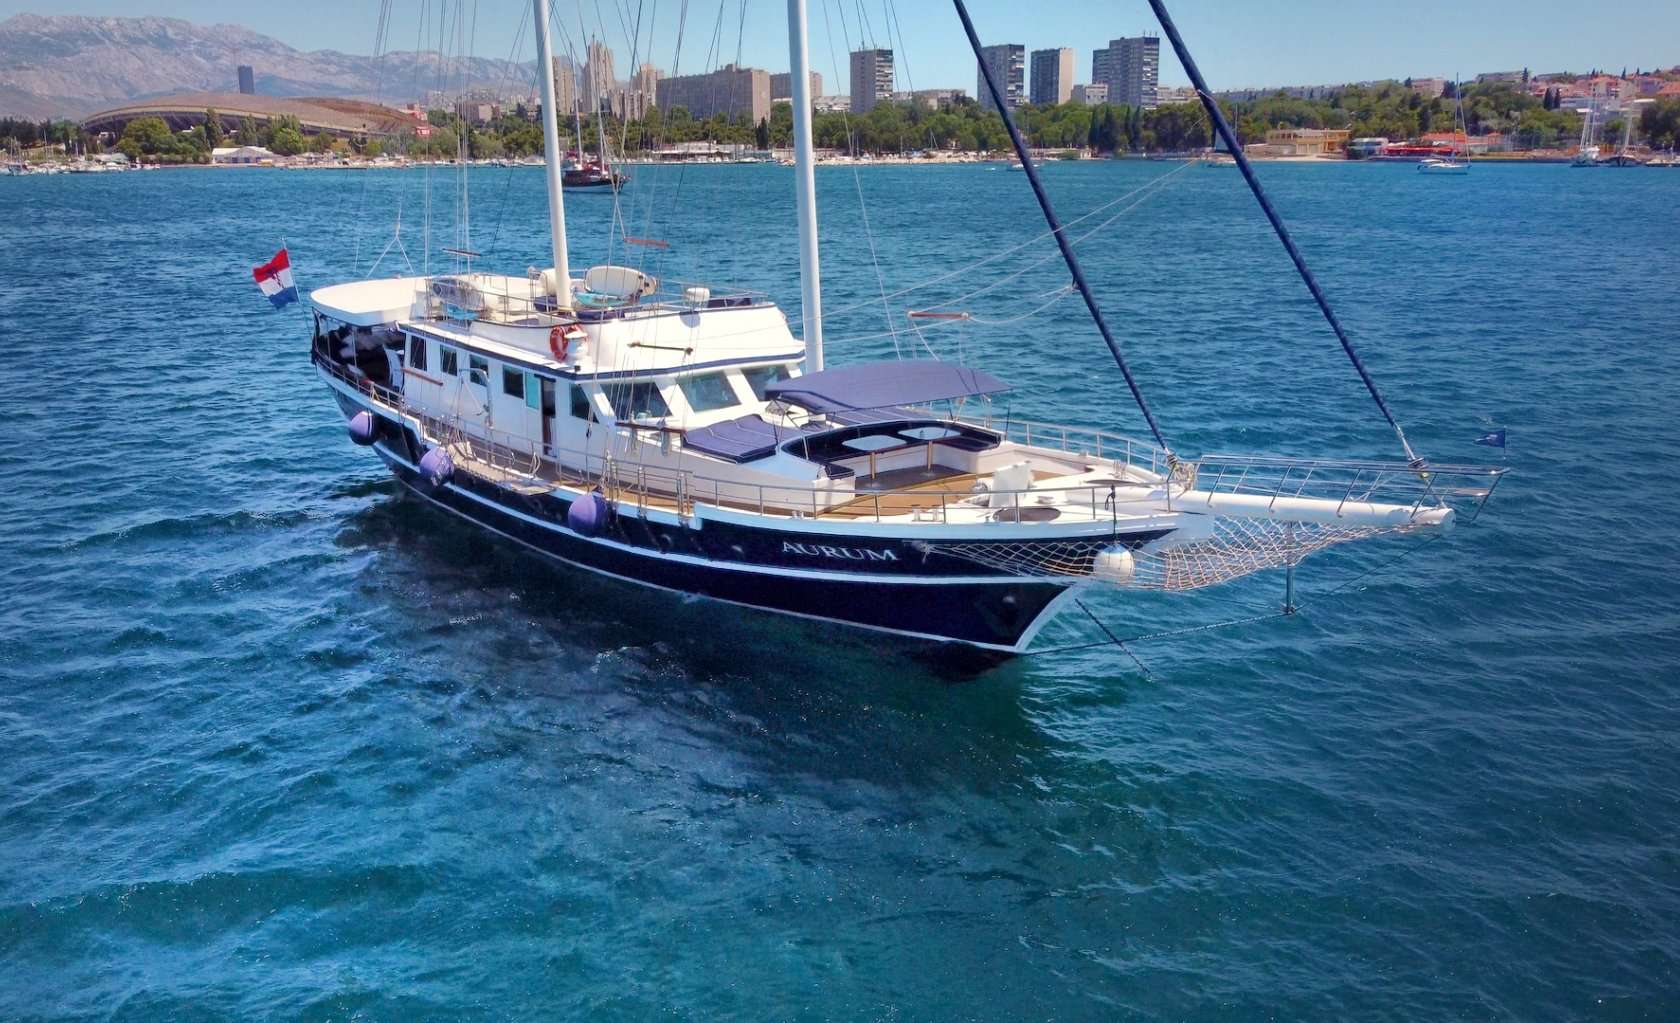 Aurum  - Superyacht charter Croatia & Boat hire in Croatia 1